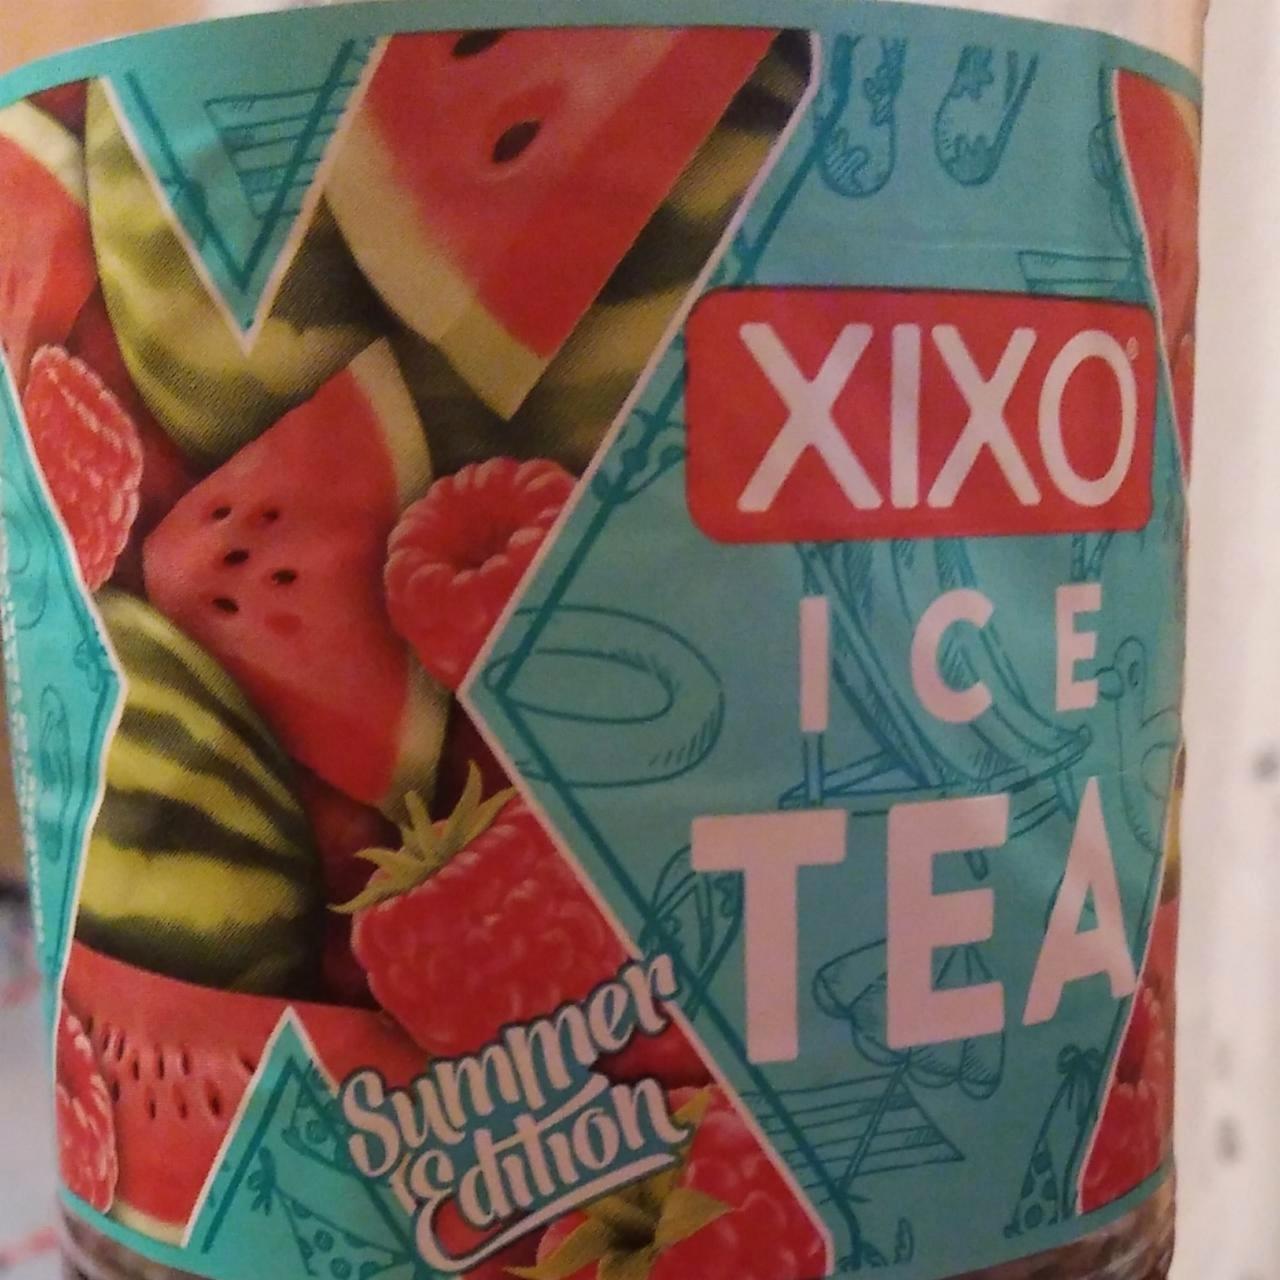 Képek - XIXO Ice Tea Summer Edition görögdinnye-málna ízű fekete tea gyümölcslével 1,5 l